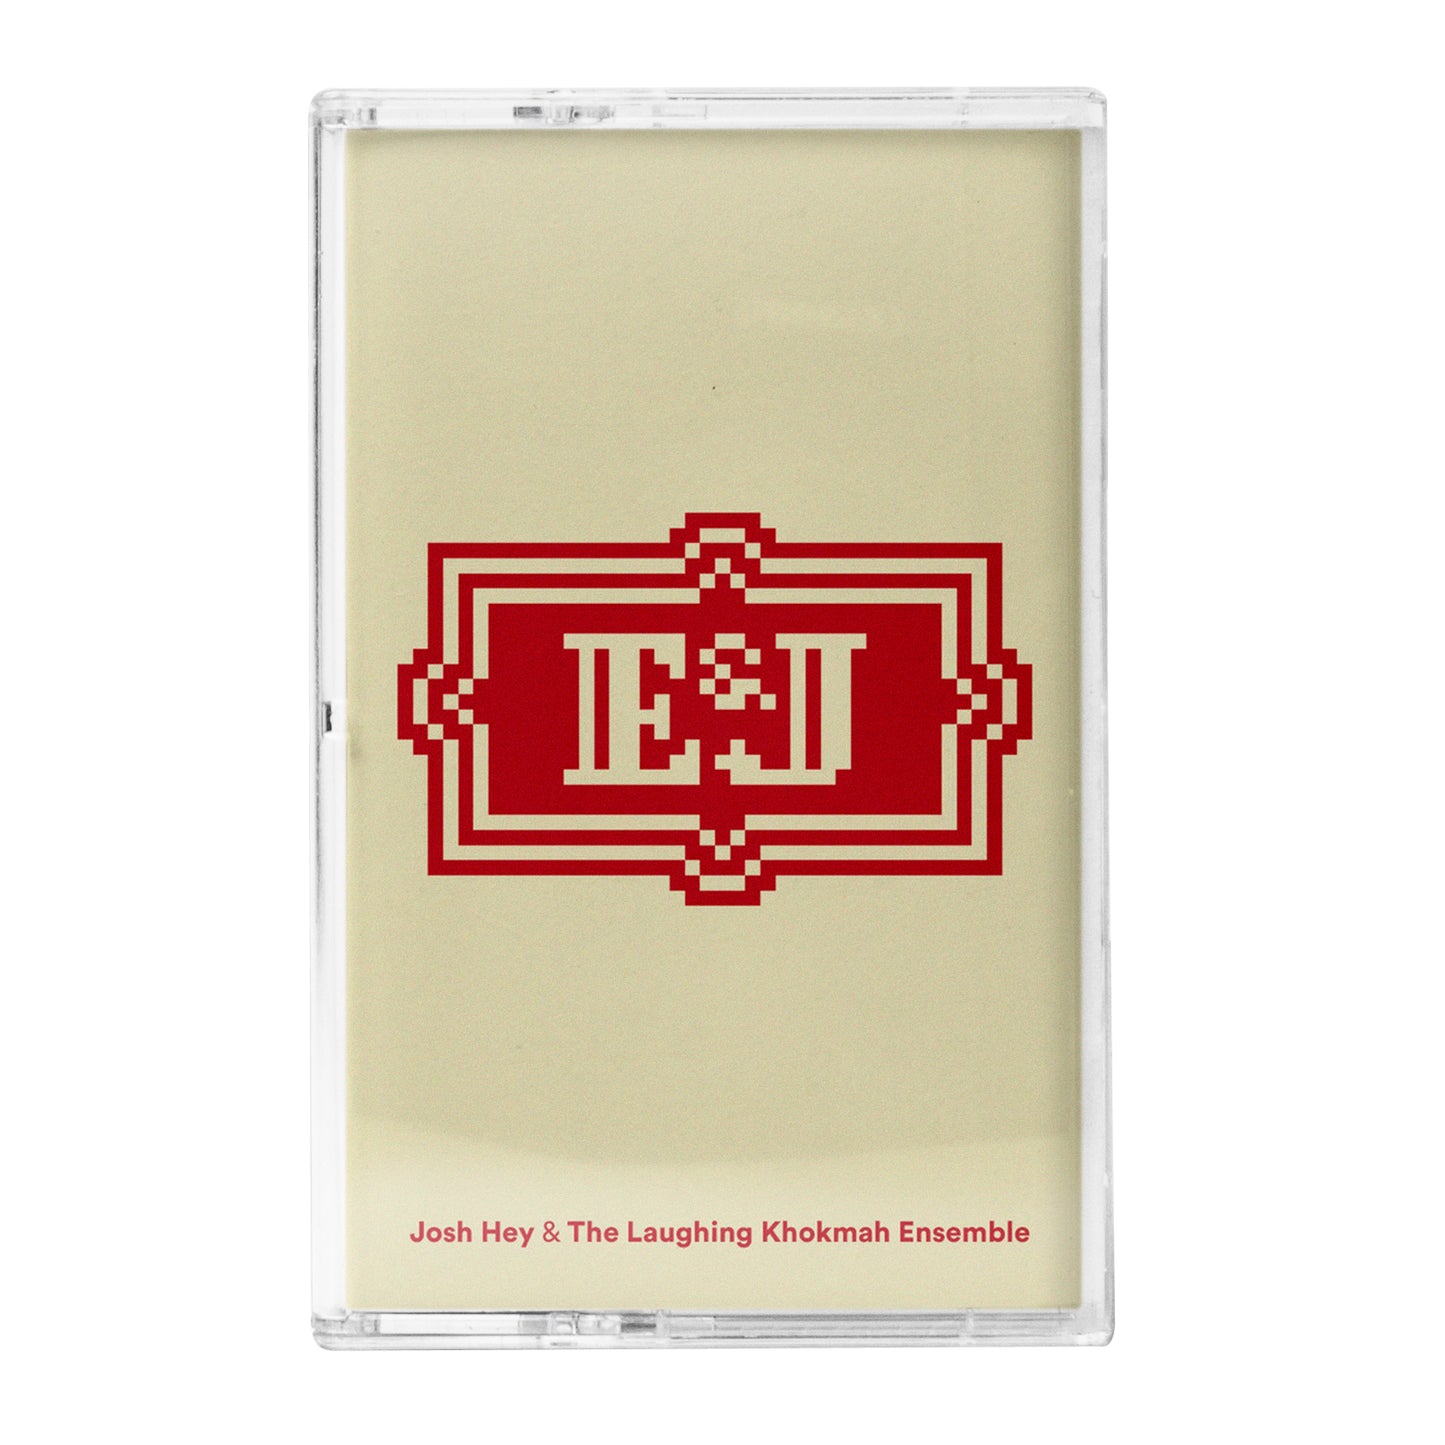 E&J (Cassette)